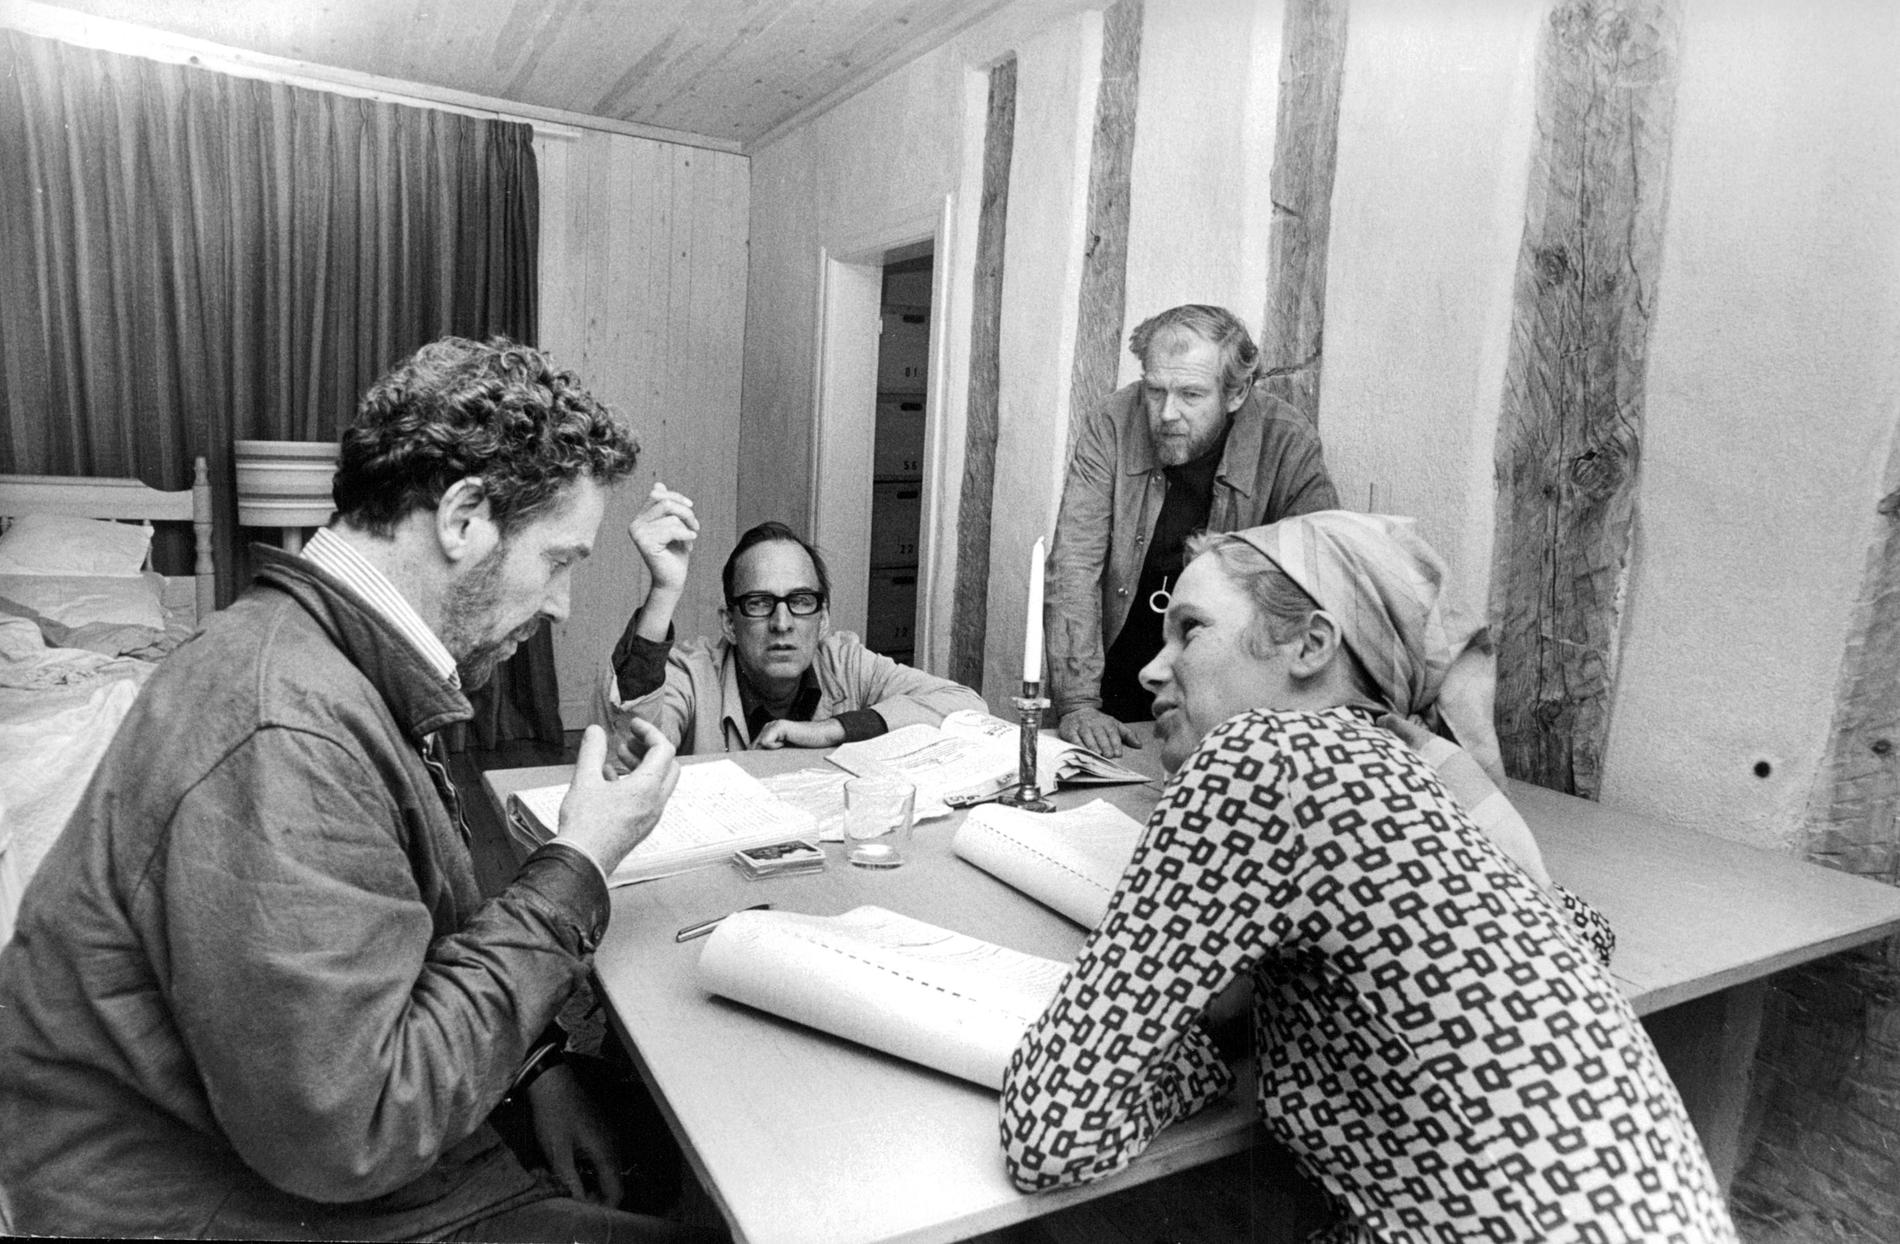 Regissören Ingmar Bergman tillsammans med skådespelarna Erland Josephson och Liv Ullmann (i förgrunden) och filmfotografen Sven Nykvist under genomgången av manuskriptet till tv-pjäsen "Scener ur ett äktenskap". Arkivbild.